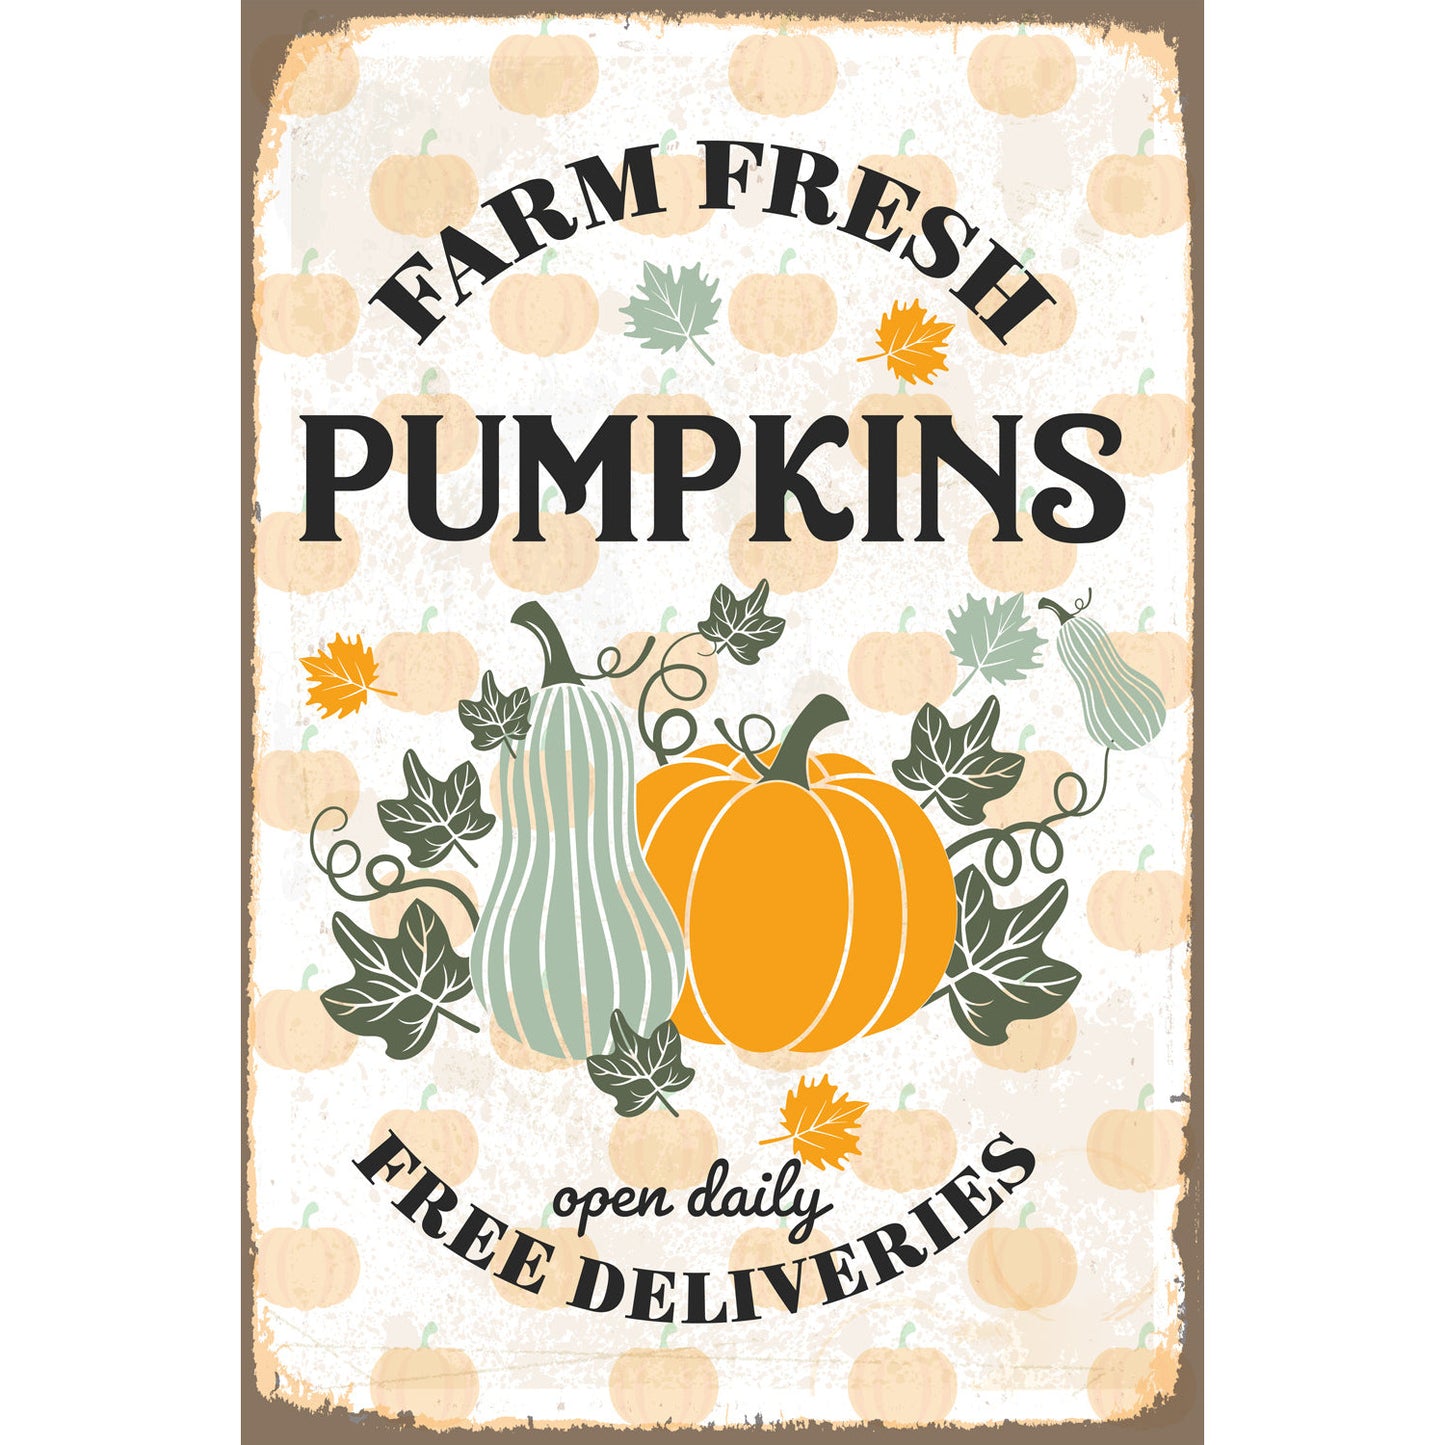 Blechschild - Farm Fresh Pumpkins